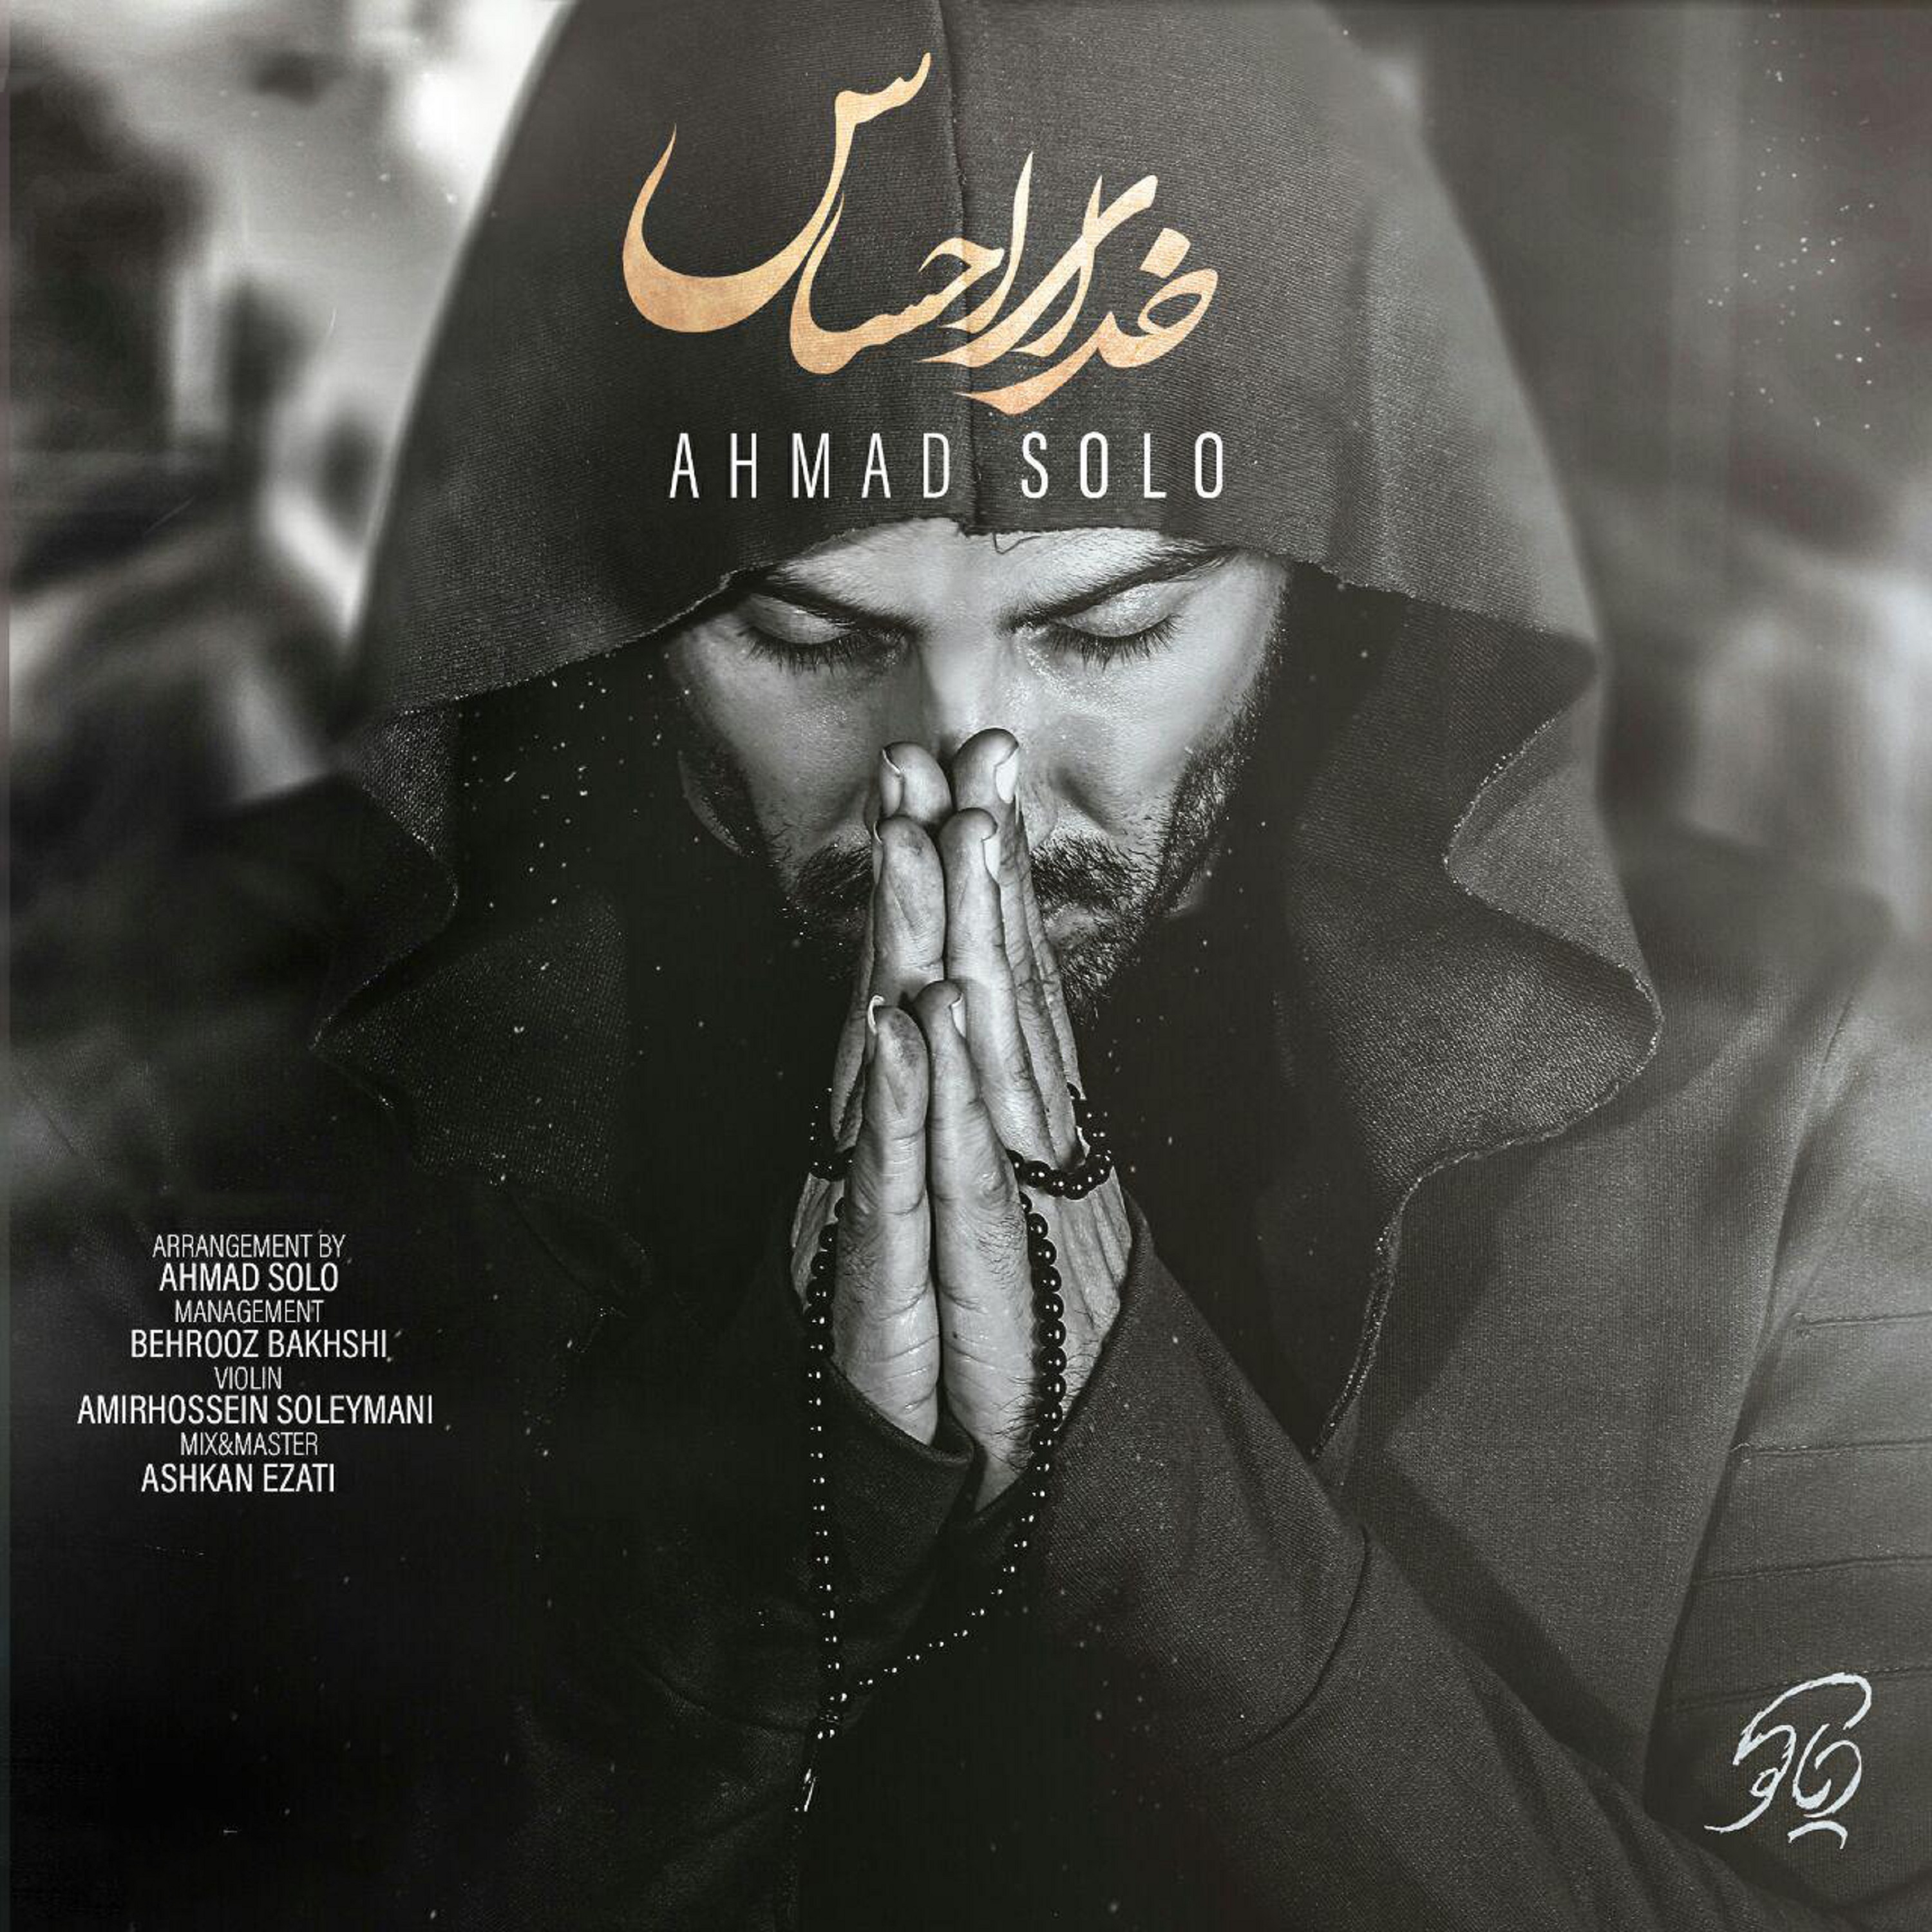  دانلود آهنگ جدید احمدرضا شهریاری - خدای احساس | Download New Music By Ahmad Solo  - Khodaye Ehsas